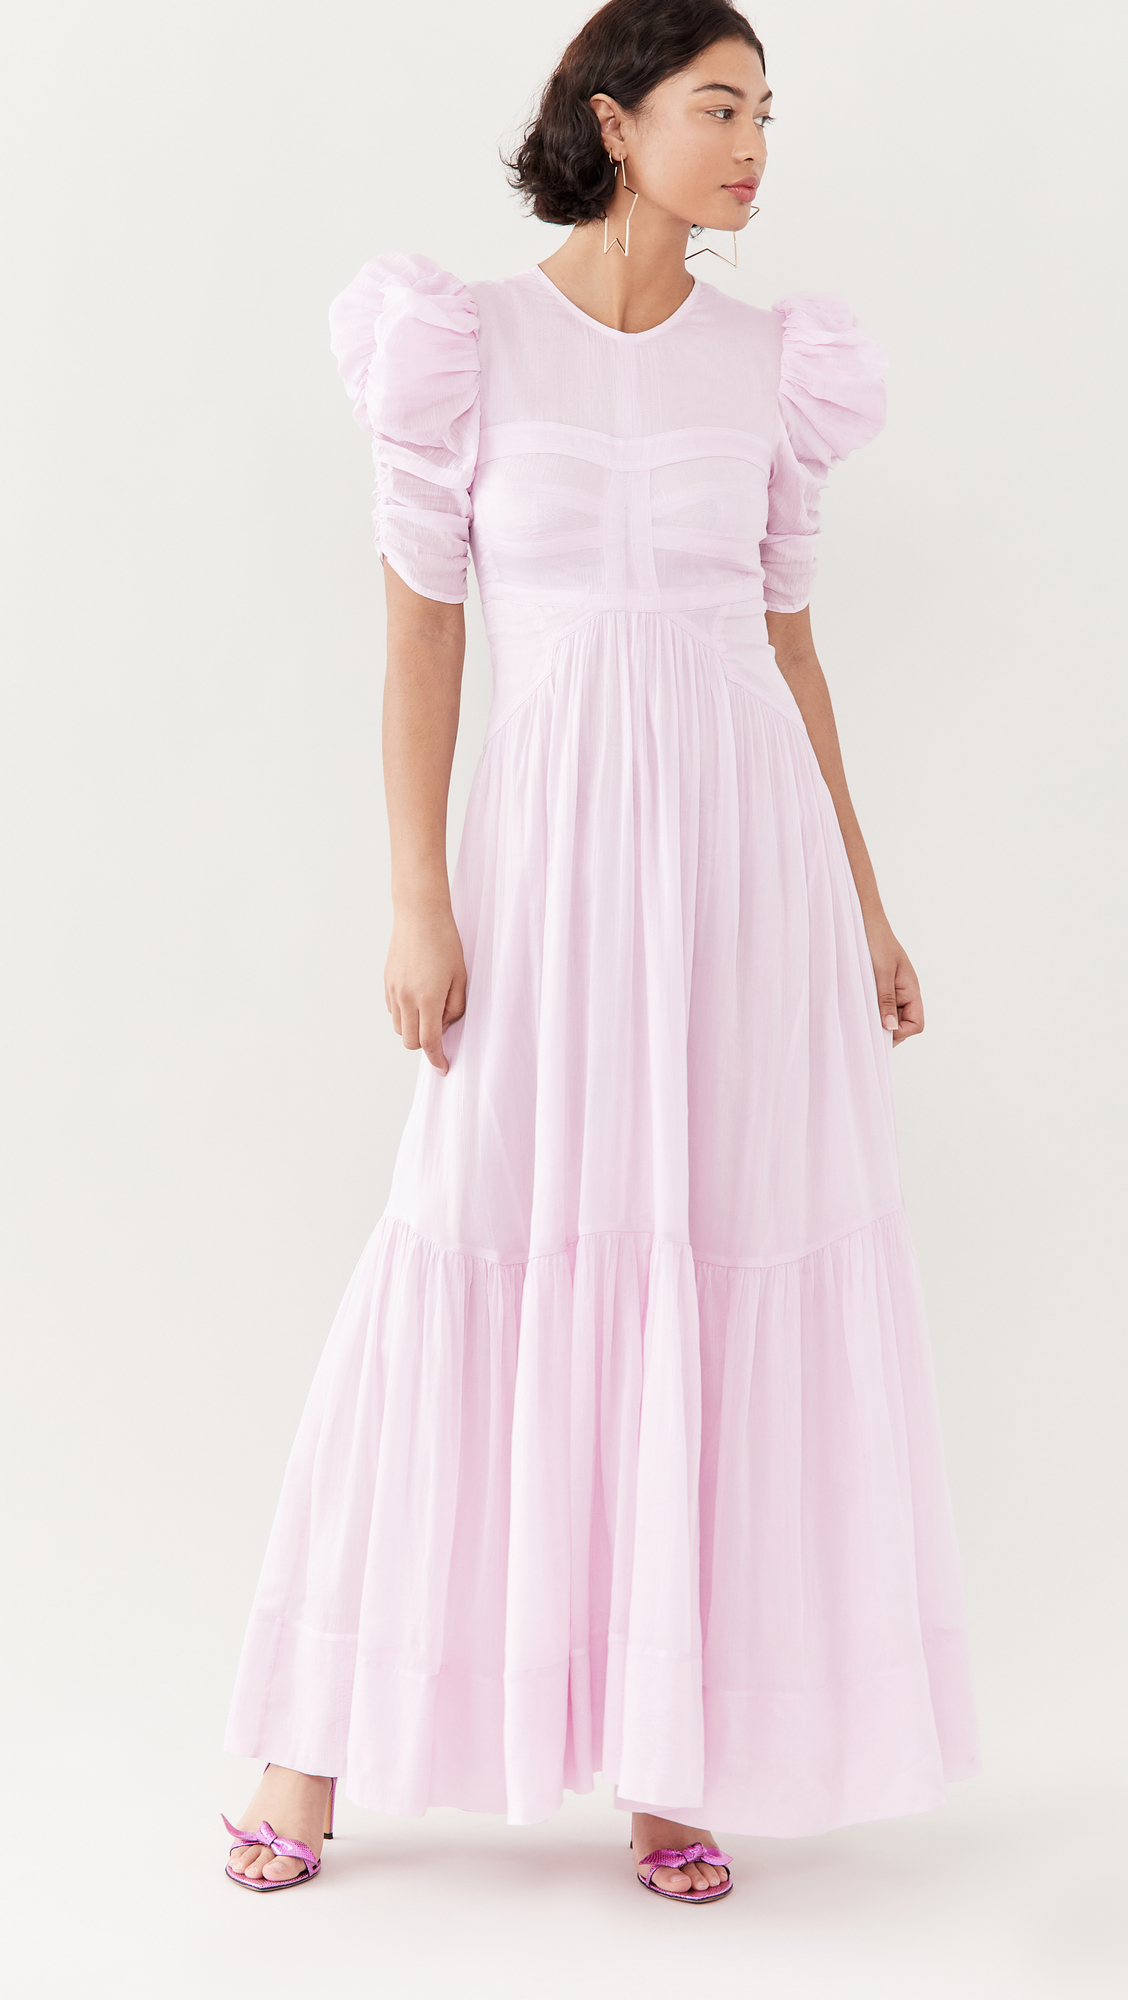 Isabel Marant Katici Wedding Dress Best Pink Wedding Dresses for 2021 2022 Brides Bridal Musings 1 - 30 chiếc áo dài cưới màu hồng dành cho cô dâu yêu thích sắc màu